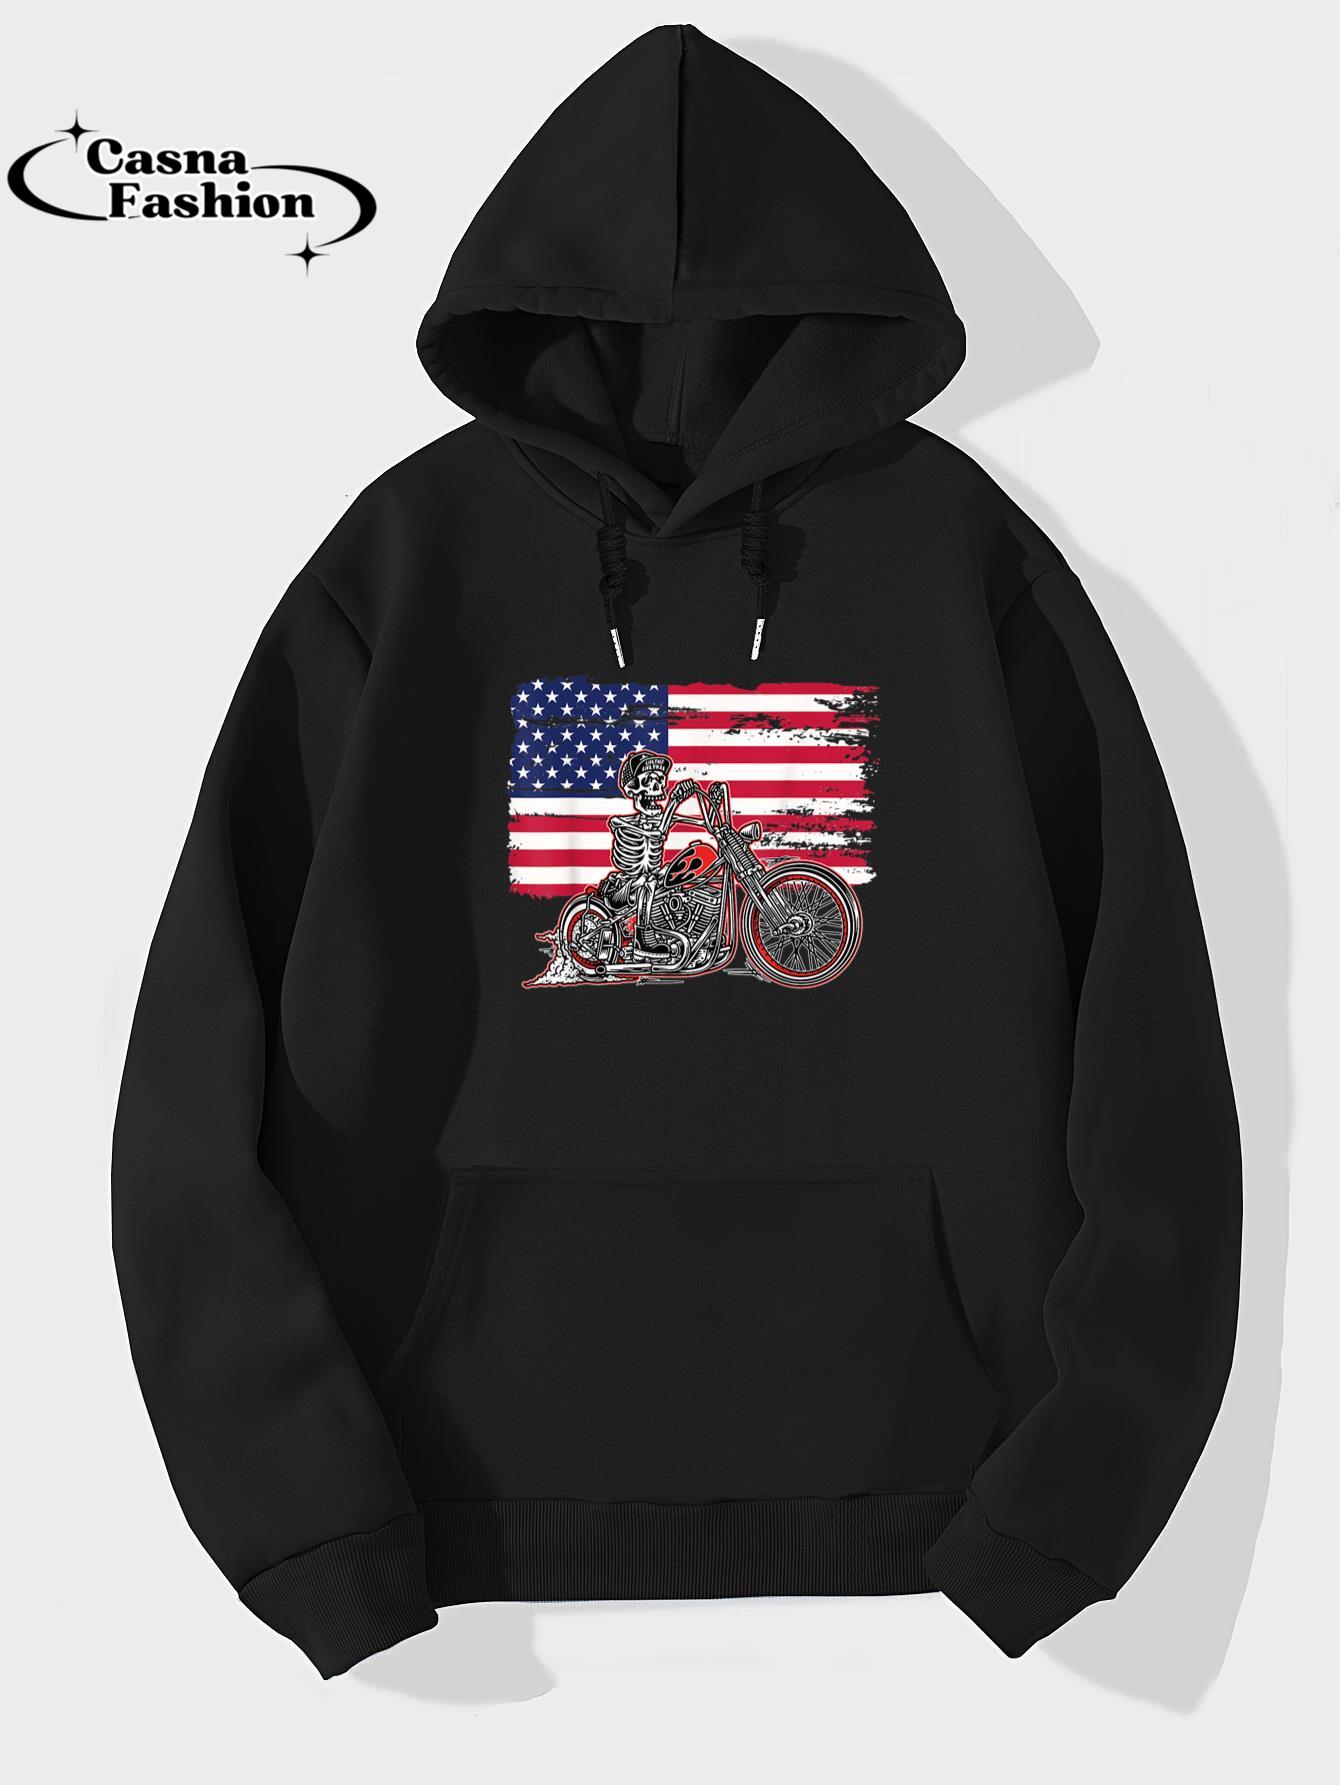 casnafashion_Hoodie_American Flag Motorcycle Skeleton Biker Bobber Chopper Rider T-Shirt_hoodie_black hoodie